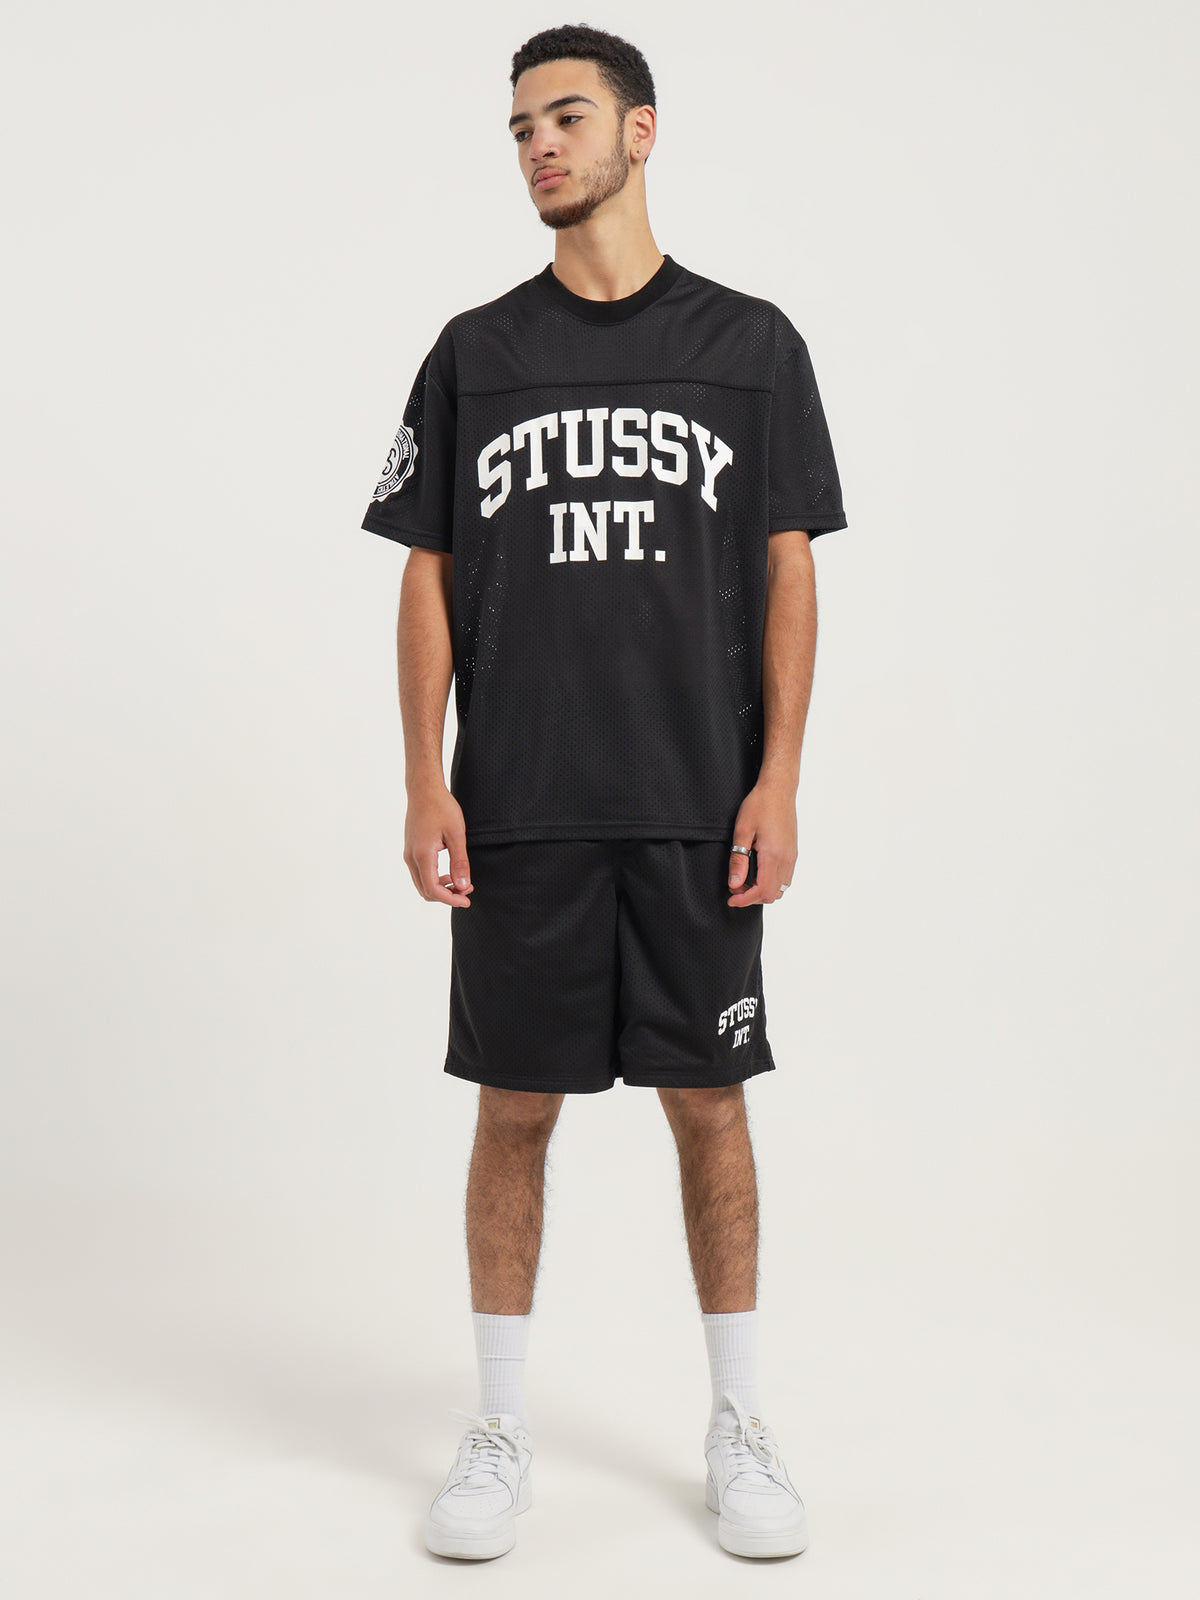 Stussy Athletics Mesh Shorts in Black